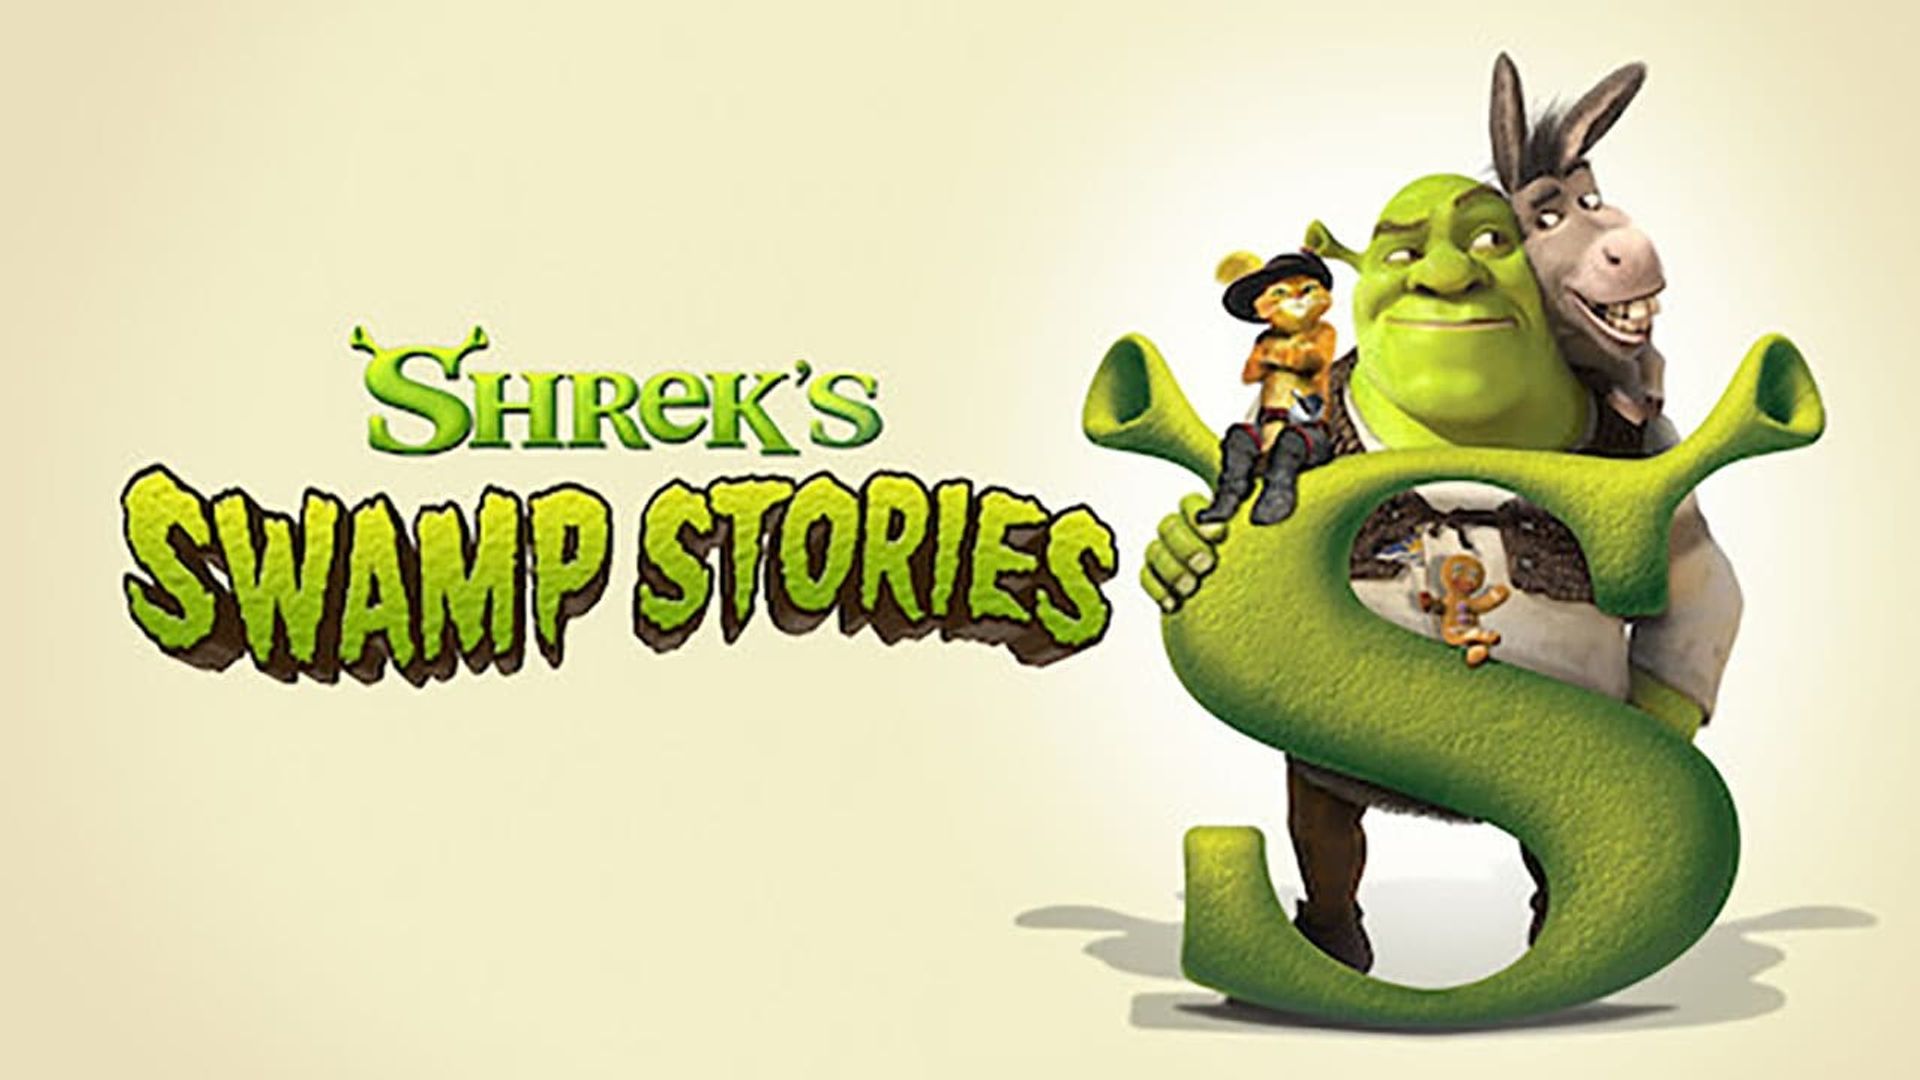 DreamWorks Shrek's Swamp Stories background